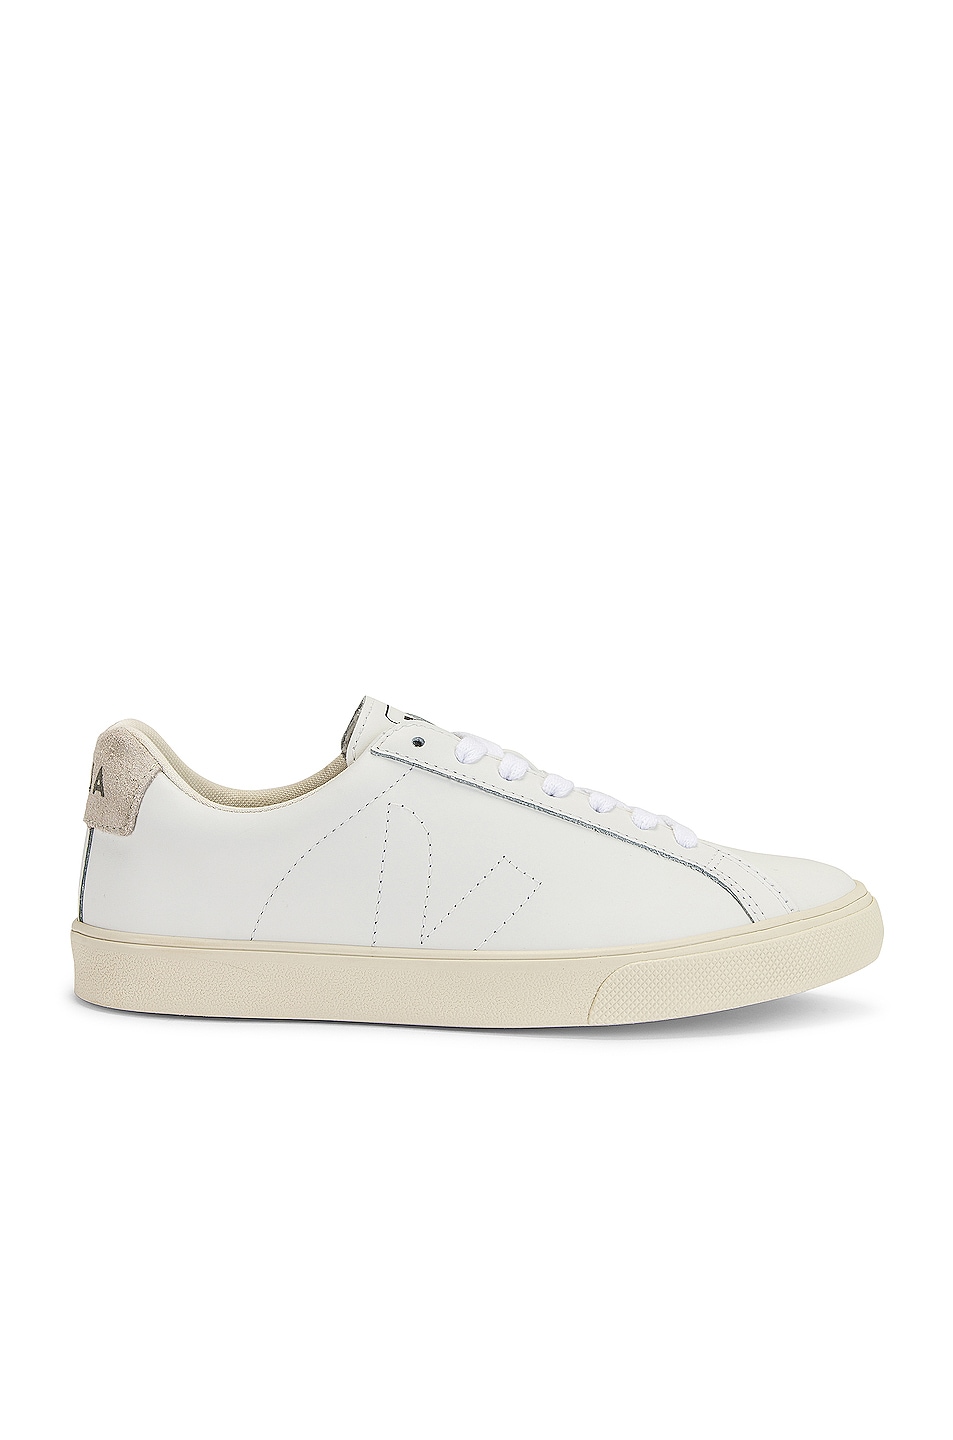 Image 1 of Veja Esplar Sneaker in Extra White